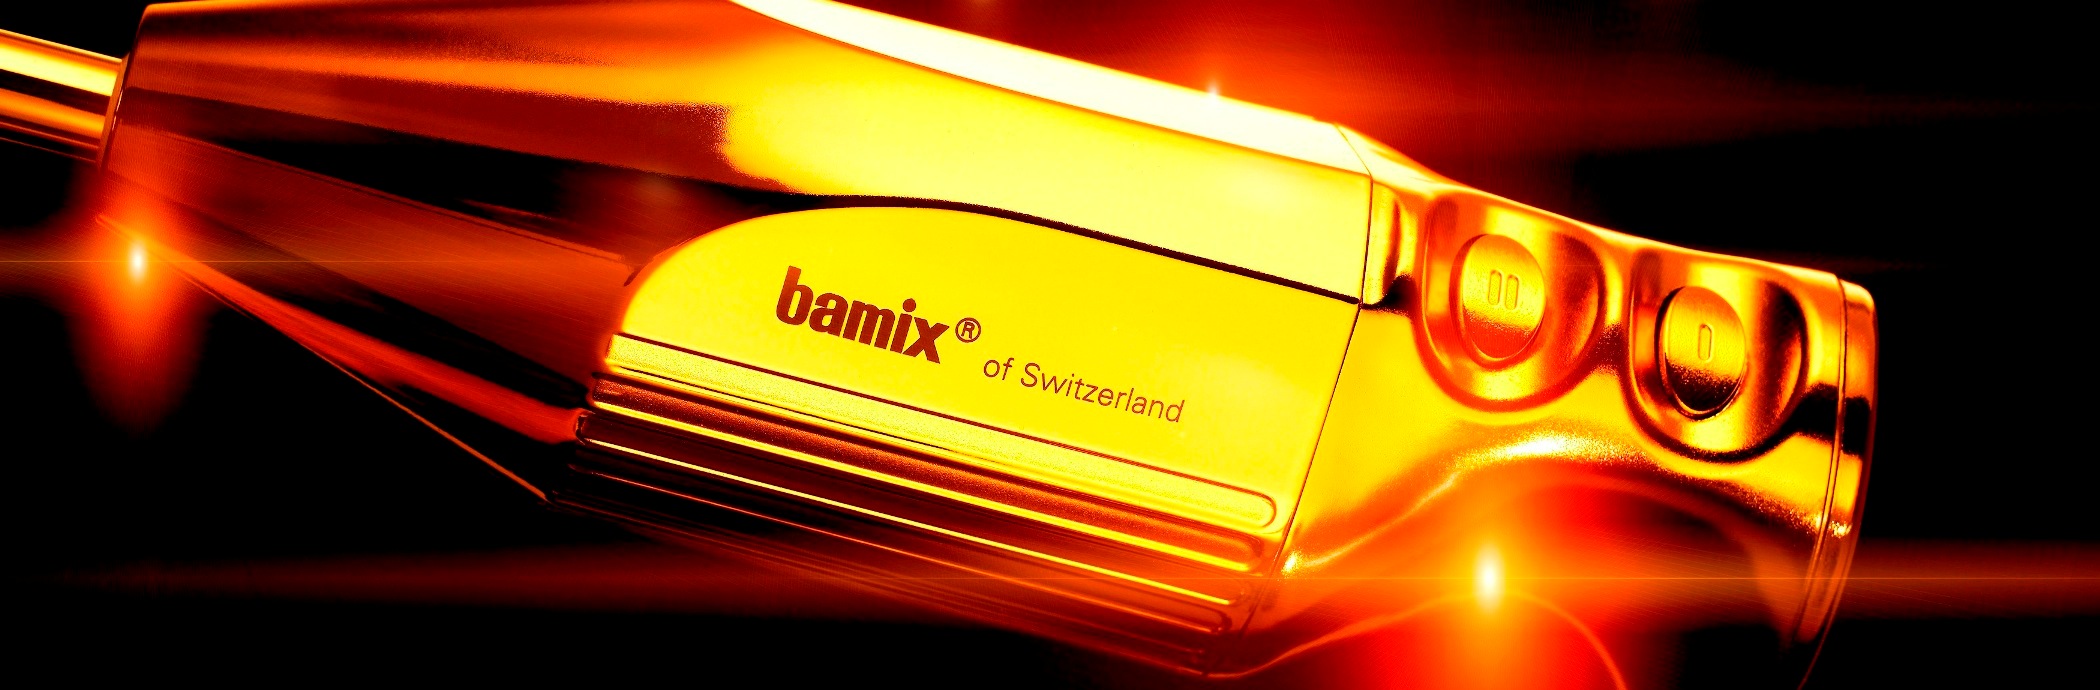 Bamix luxury line Golddigger